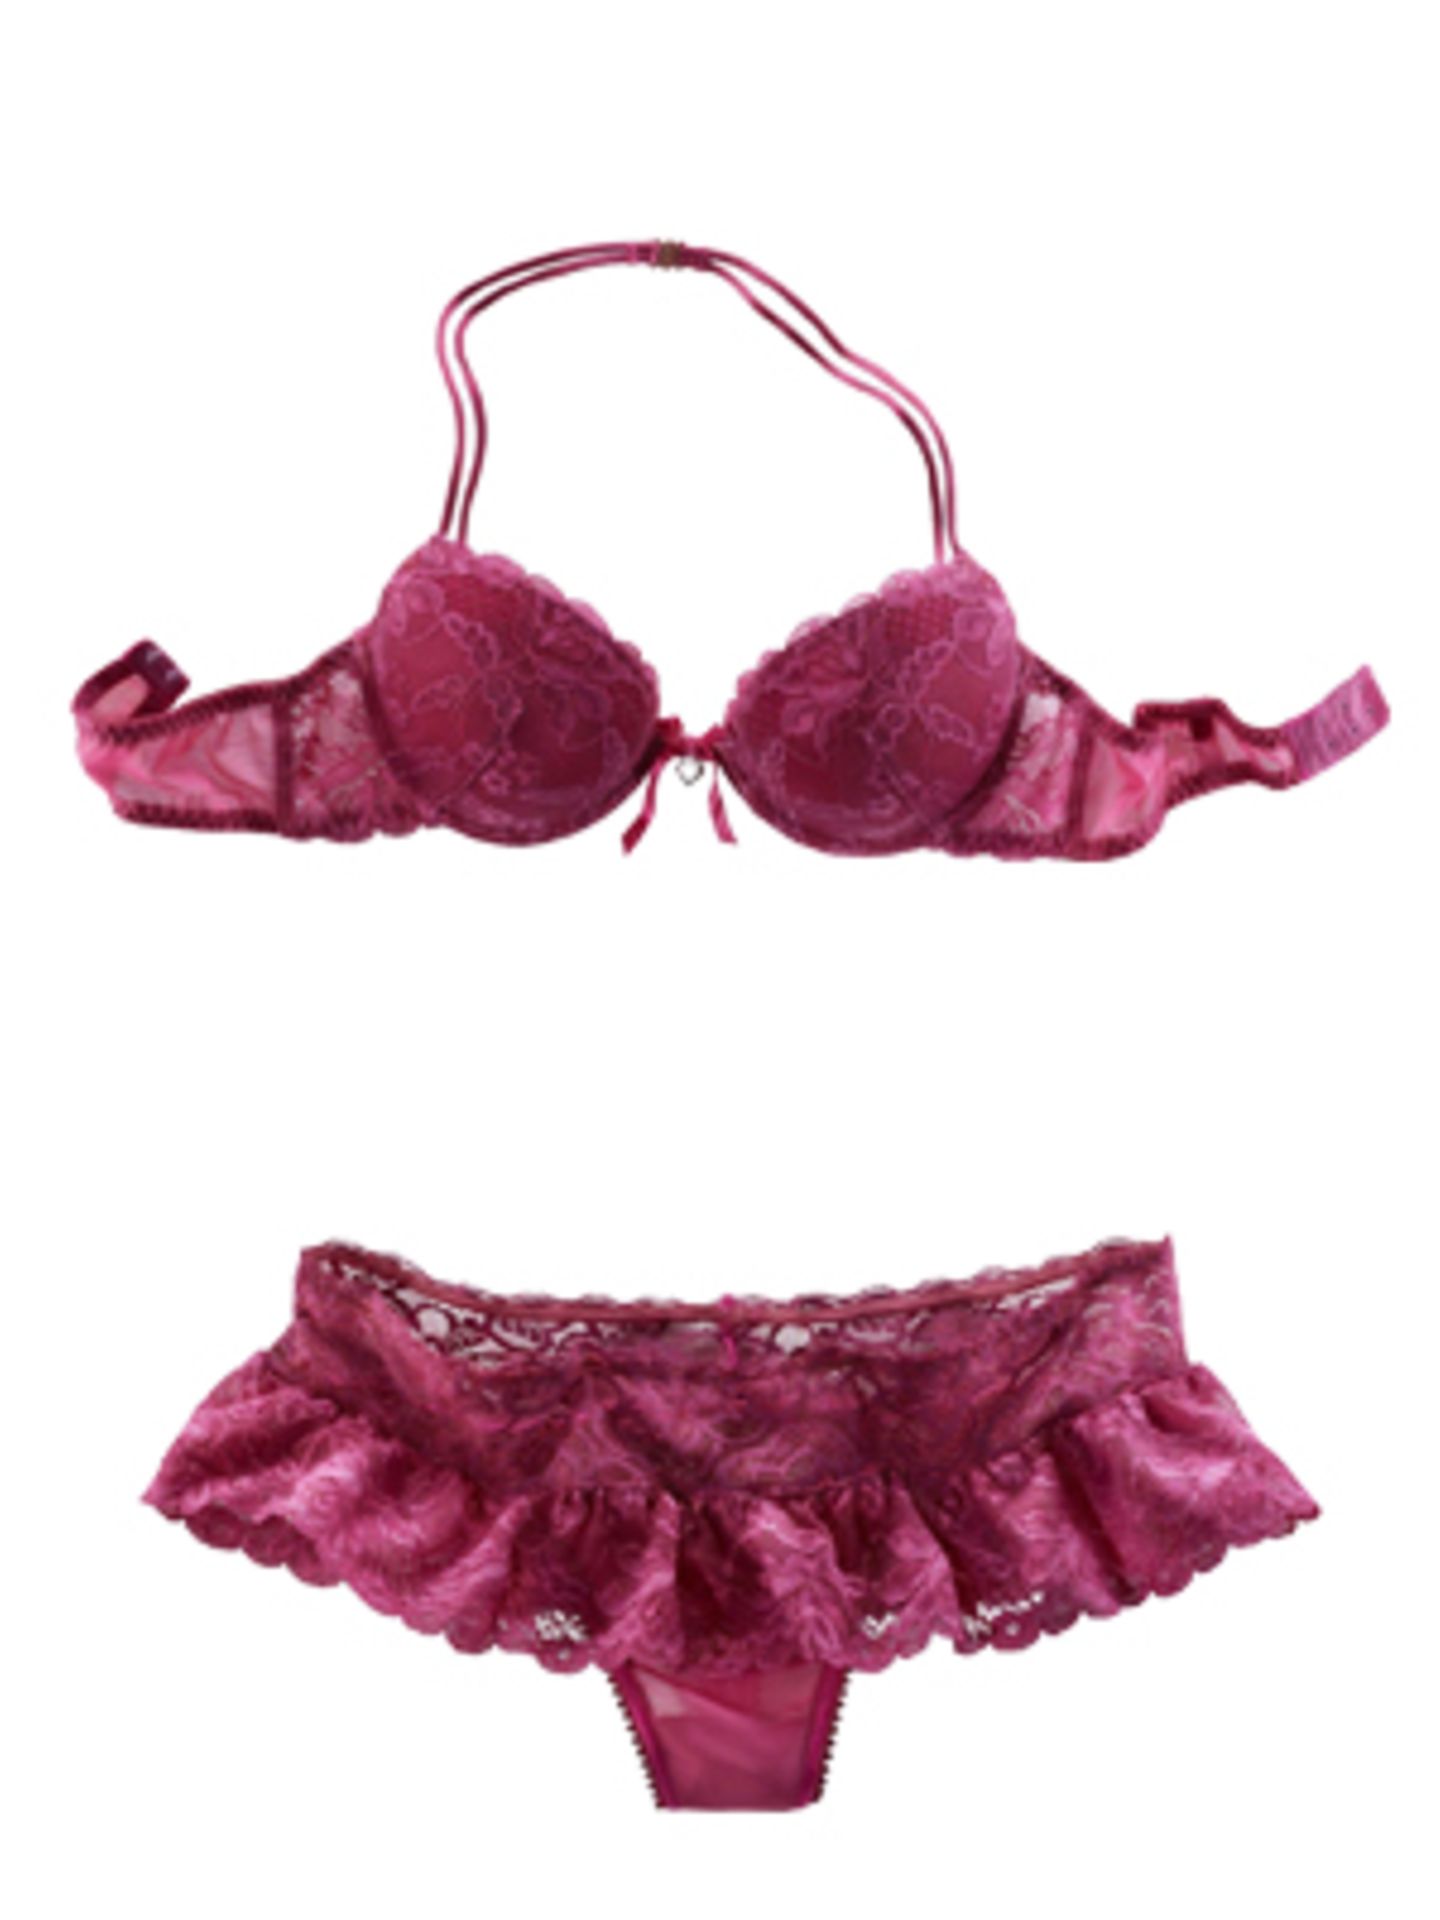 Pinkfarbenes Set aus Push-Up-BH und Panty mit Rüschen von Lascana. BH um 15 Euro, Slip um 20 Euro.